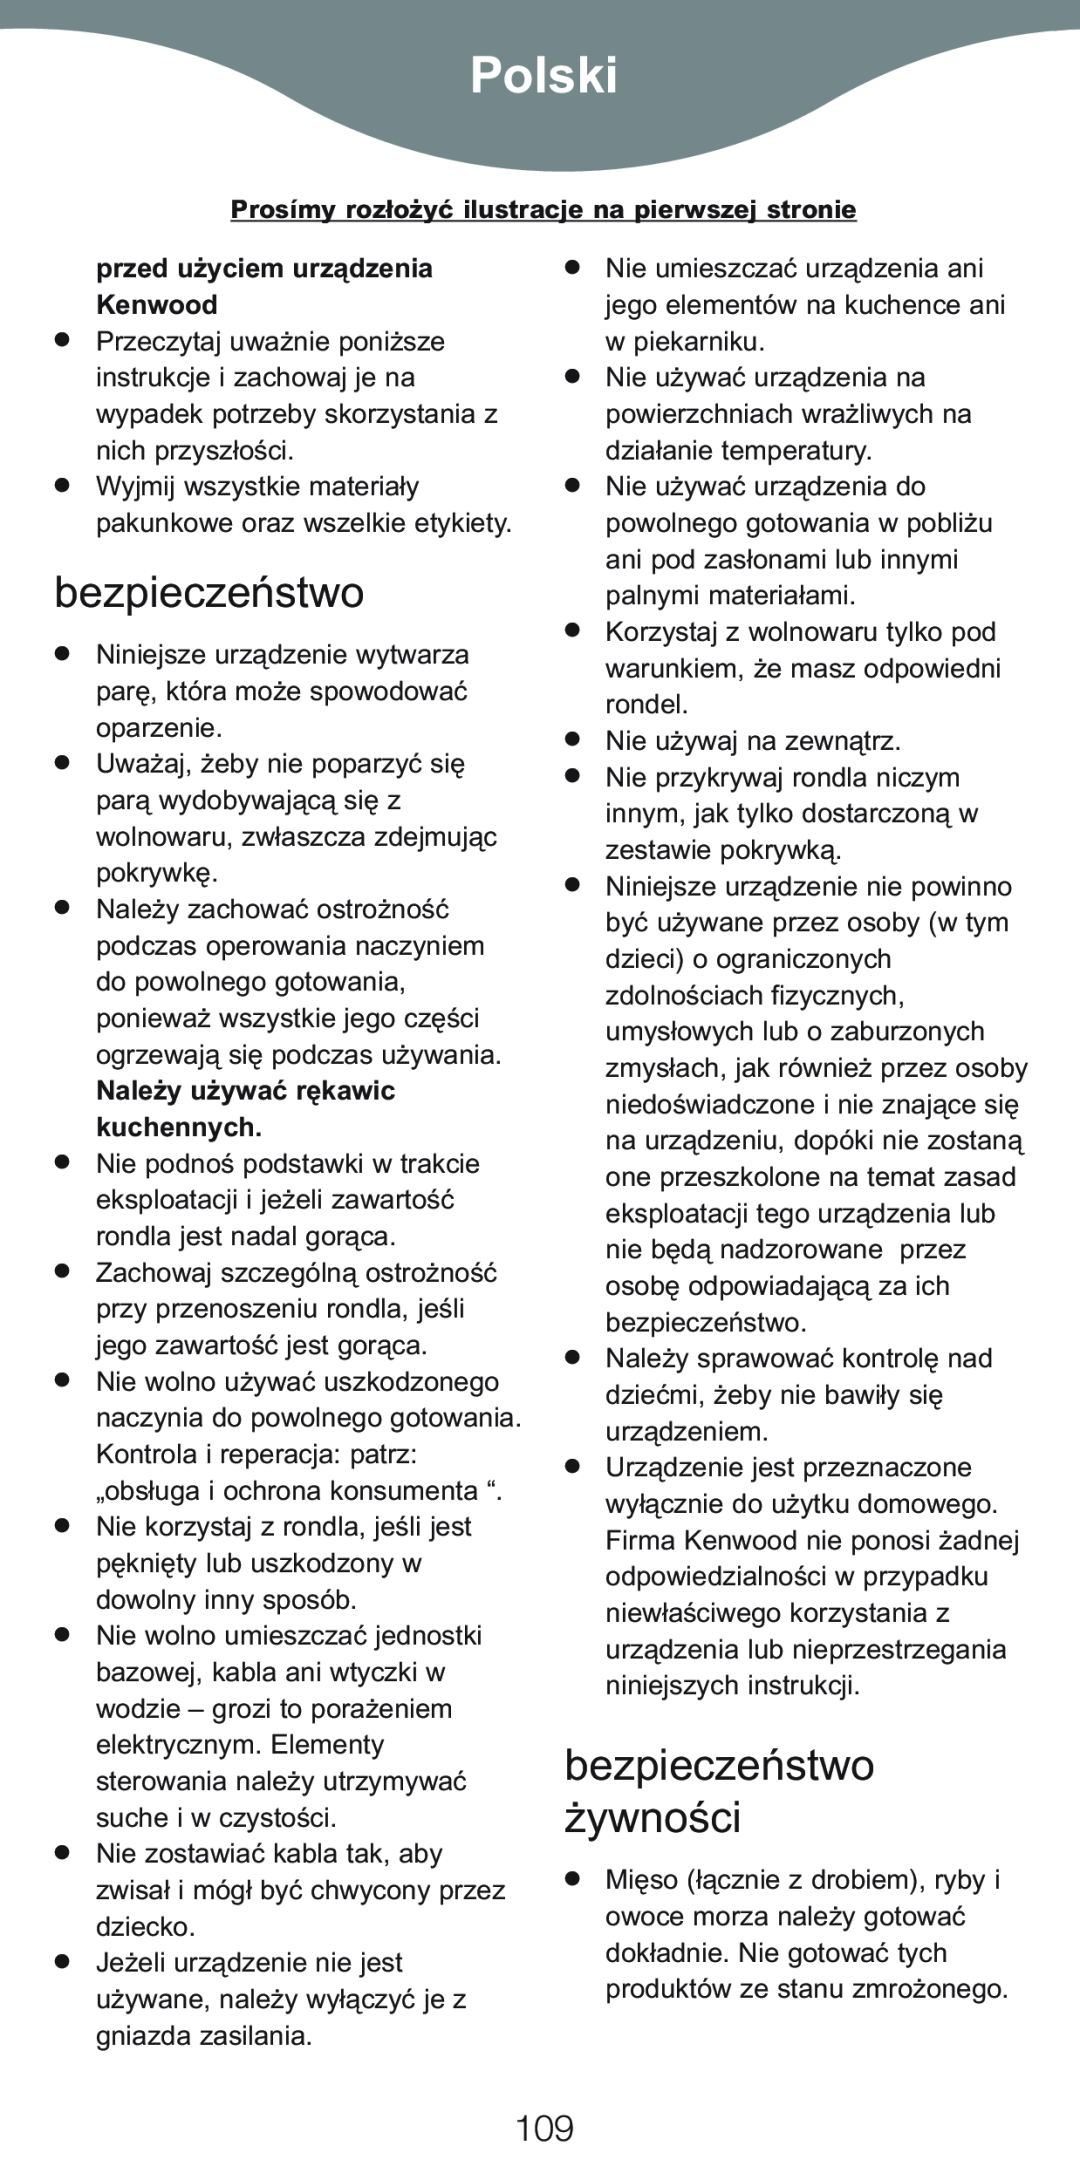 Kenwood CP707 Polski, bezpieczeństwo żywności, przed użyciem urządzenia Kenwood, Należy używać rękawic kuchennych 